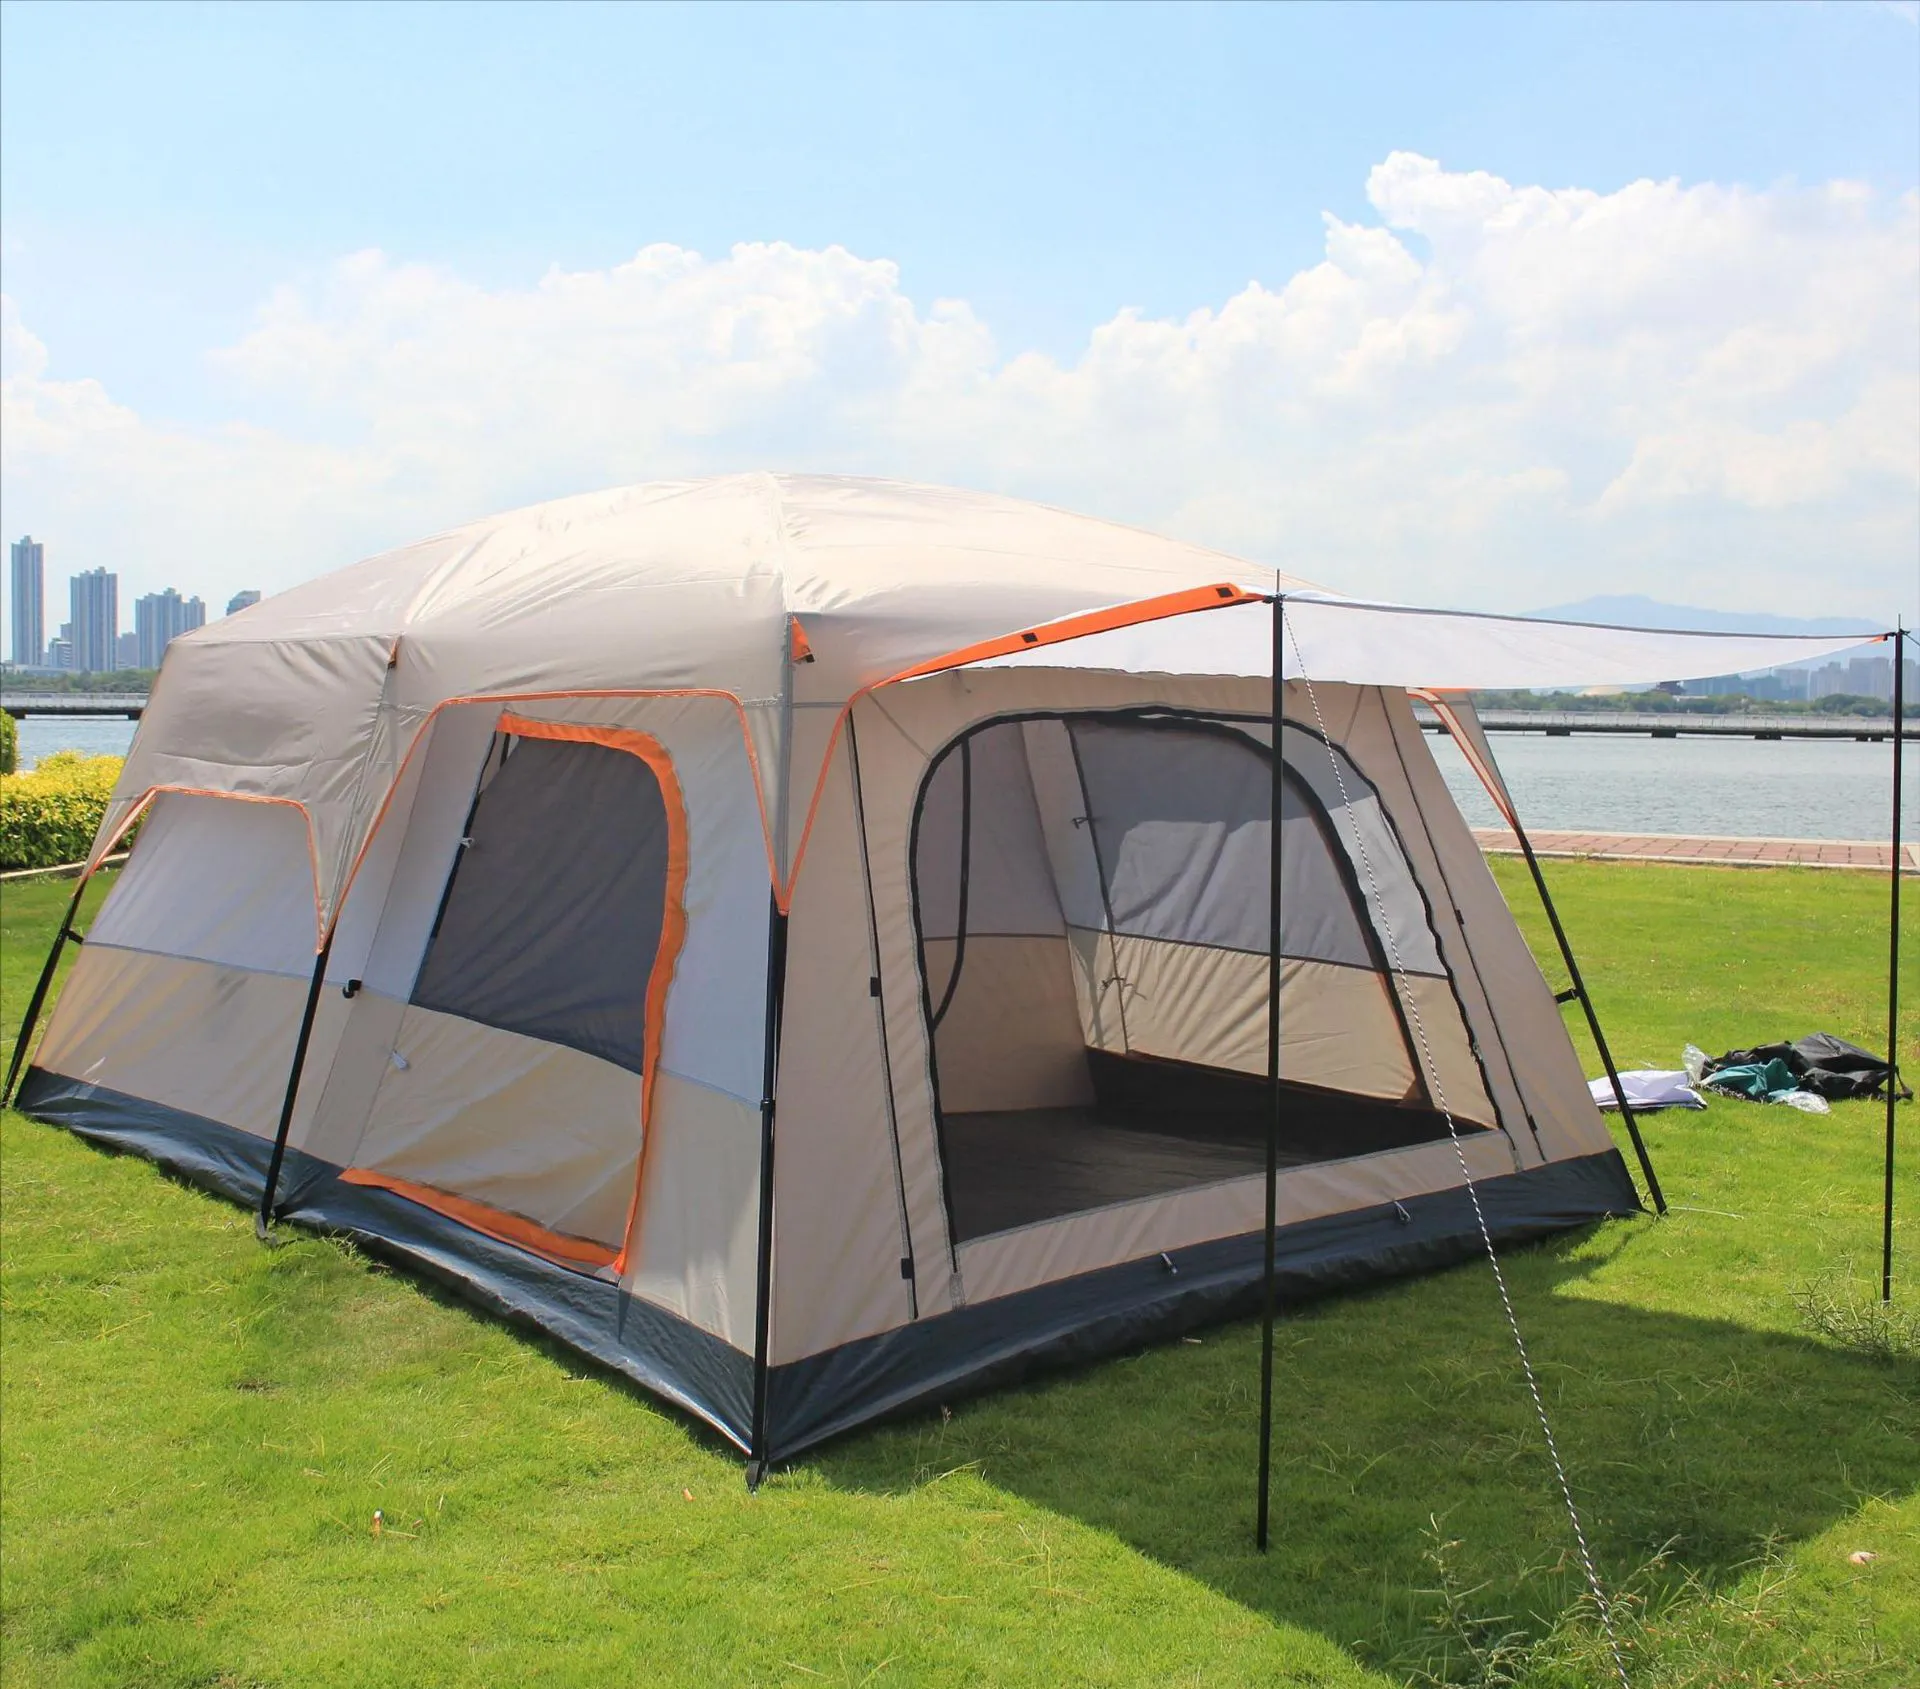 2 oda 1 oturma odası su geçirmez ekstra büyük uzay 8 ila 12 kişi taşınabilir aile açık kamp çadırı